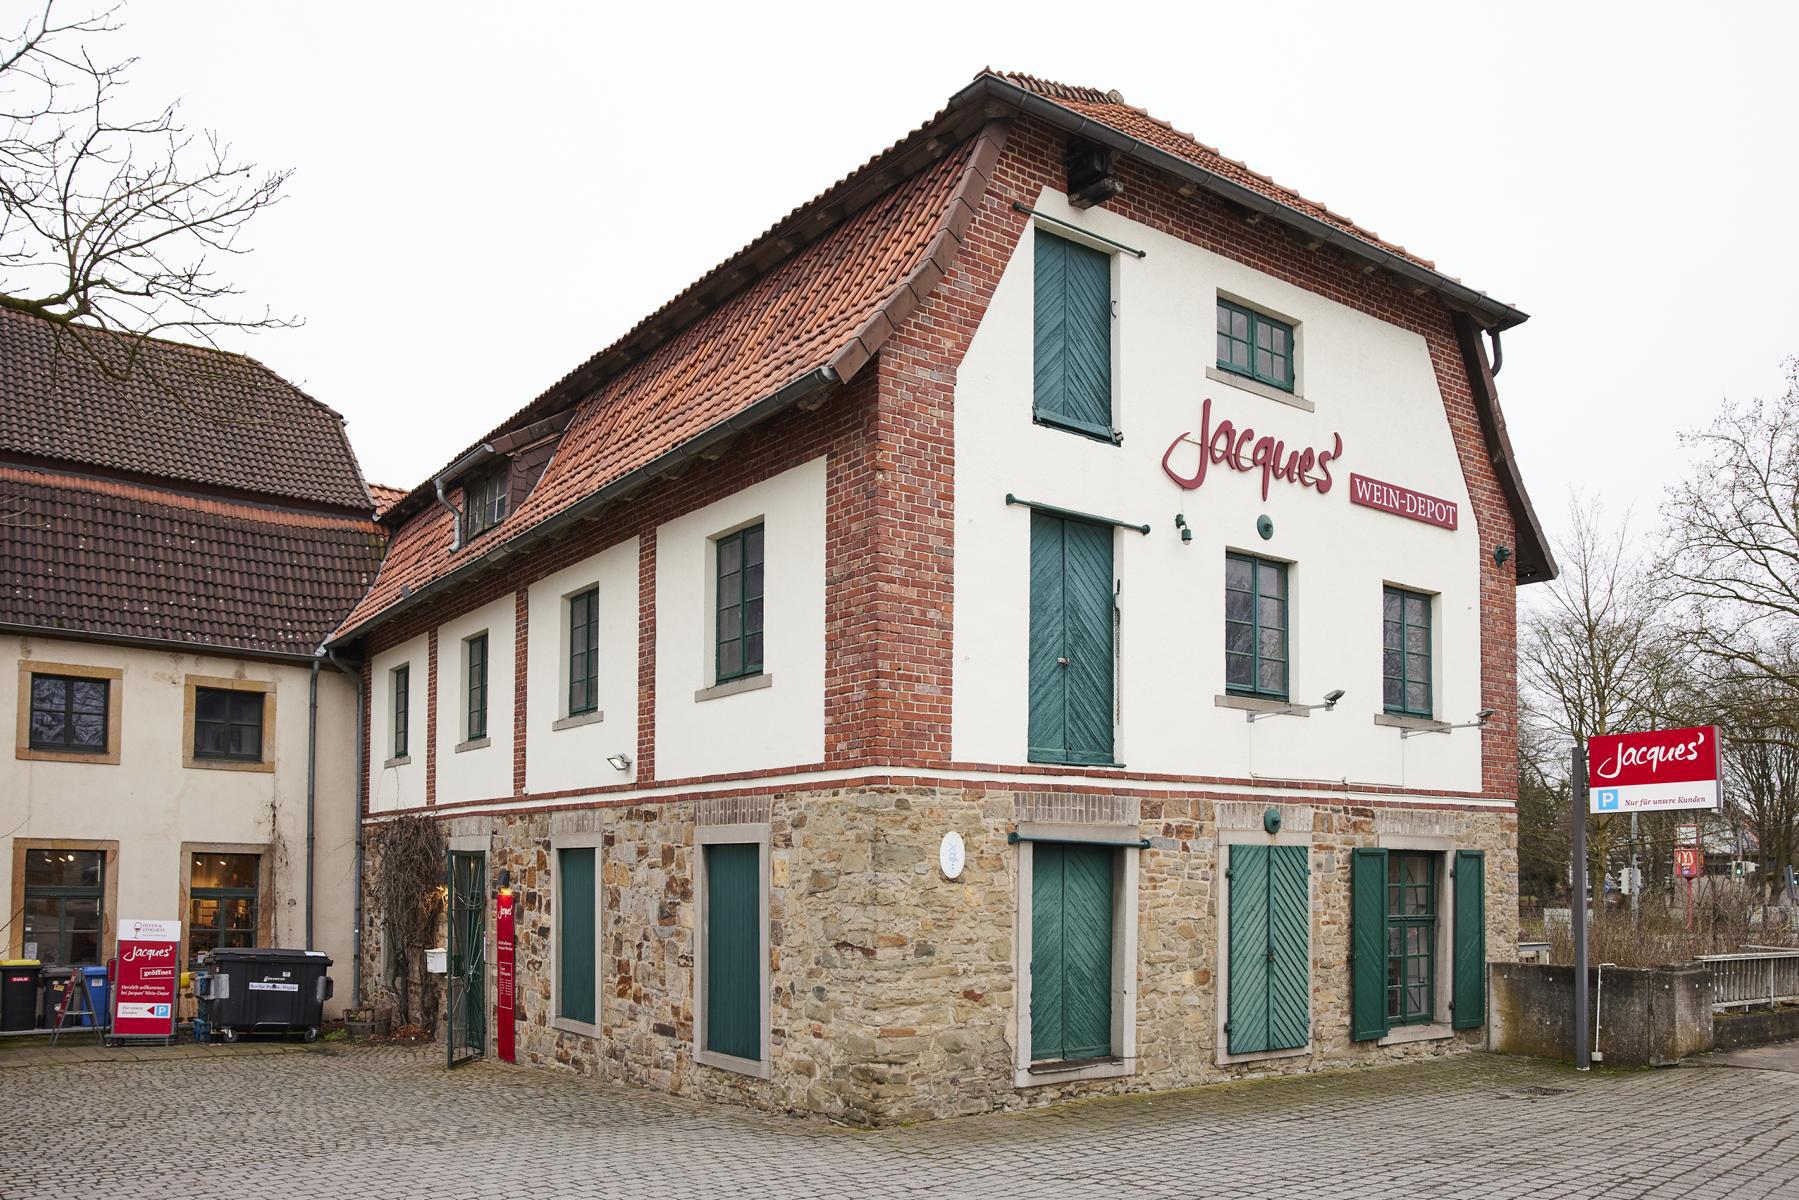 Bild 2 Jacques’ Wein-Depot Osnabrück-Haste in Osnabrück